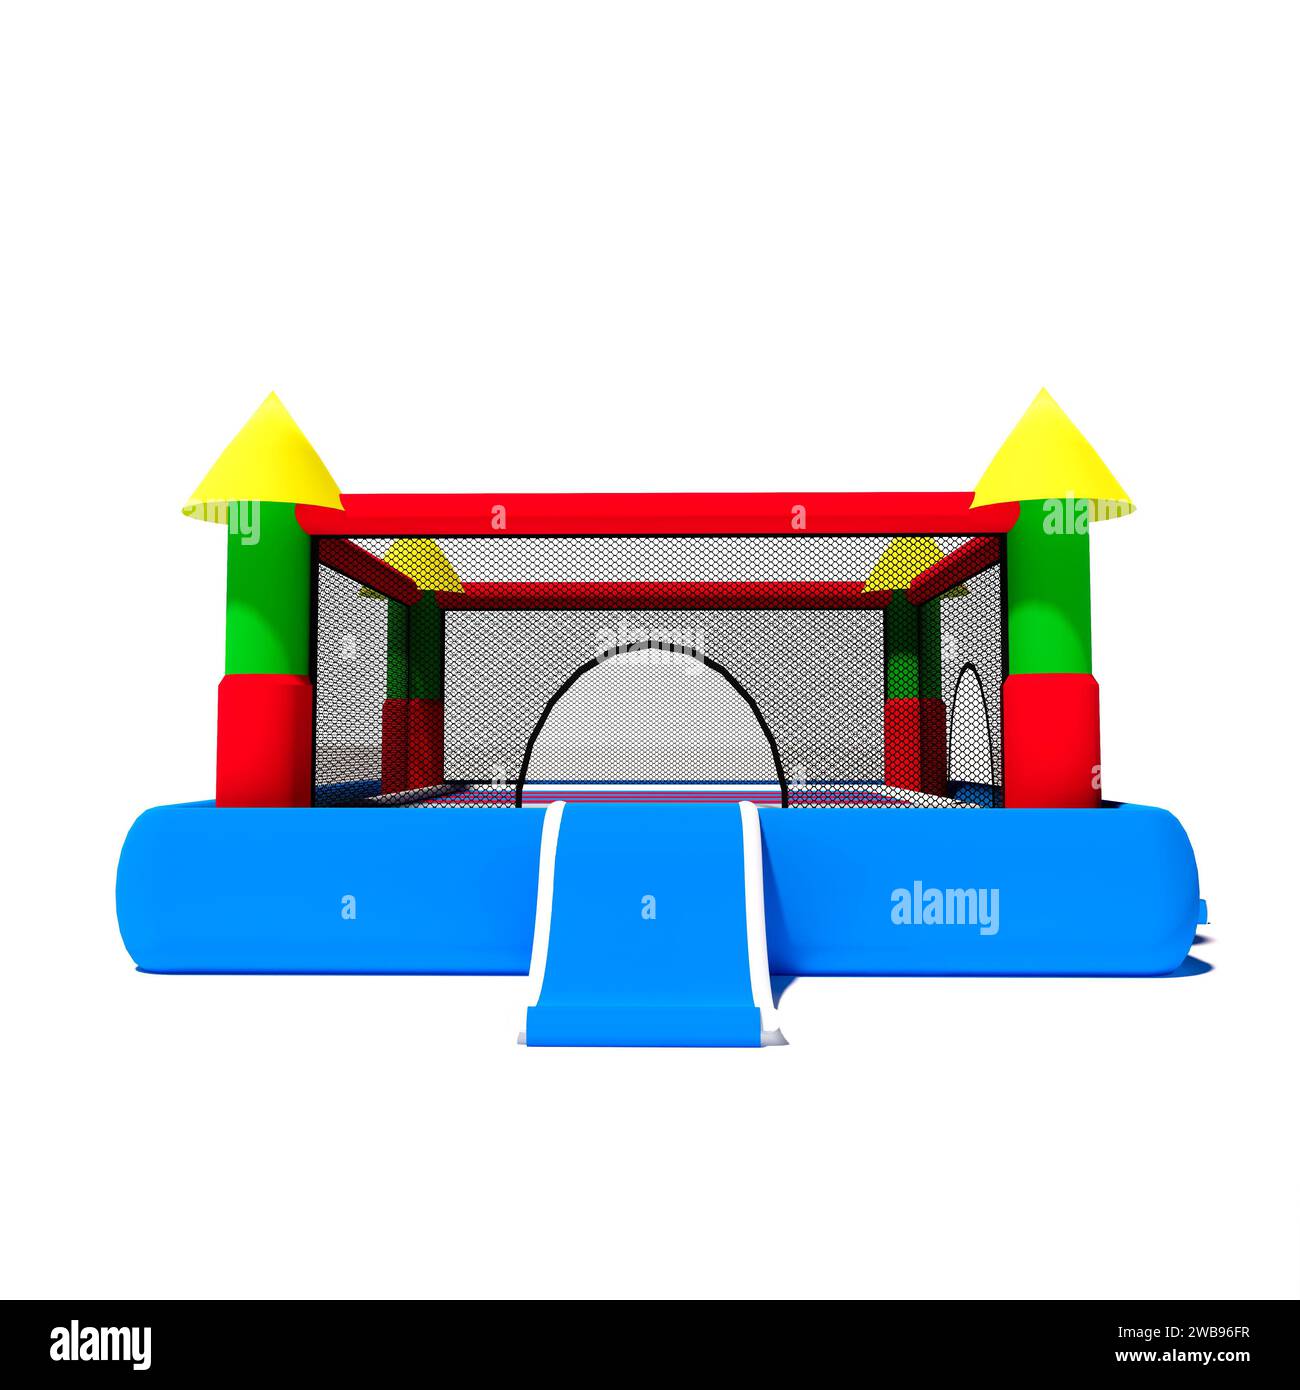 Rebondir maison de château gonflable isolé sur fond blanc. Illustration de rendu 3D. Banque D'Images